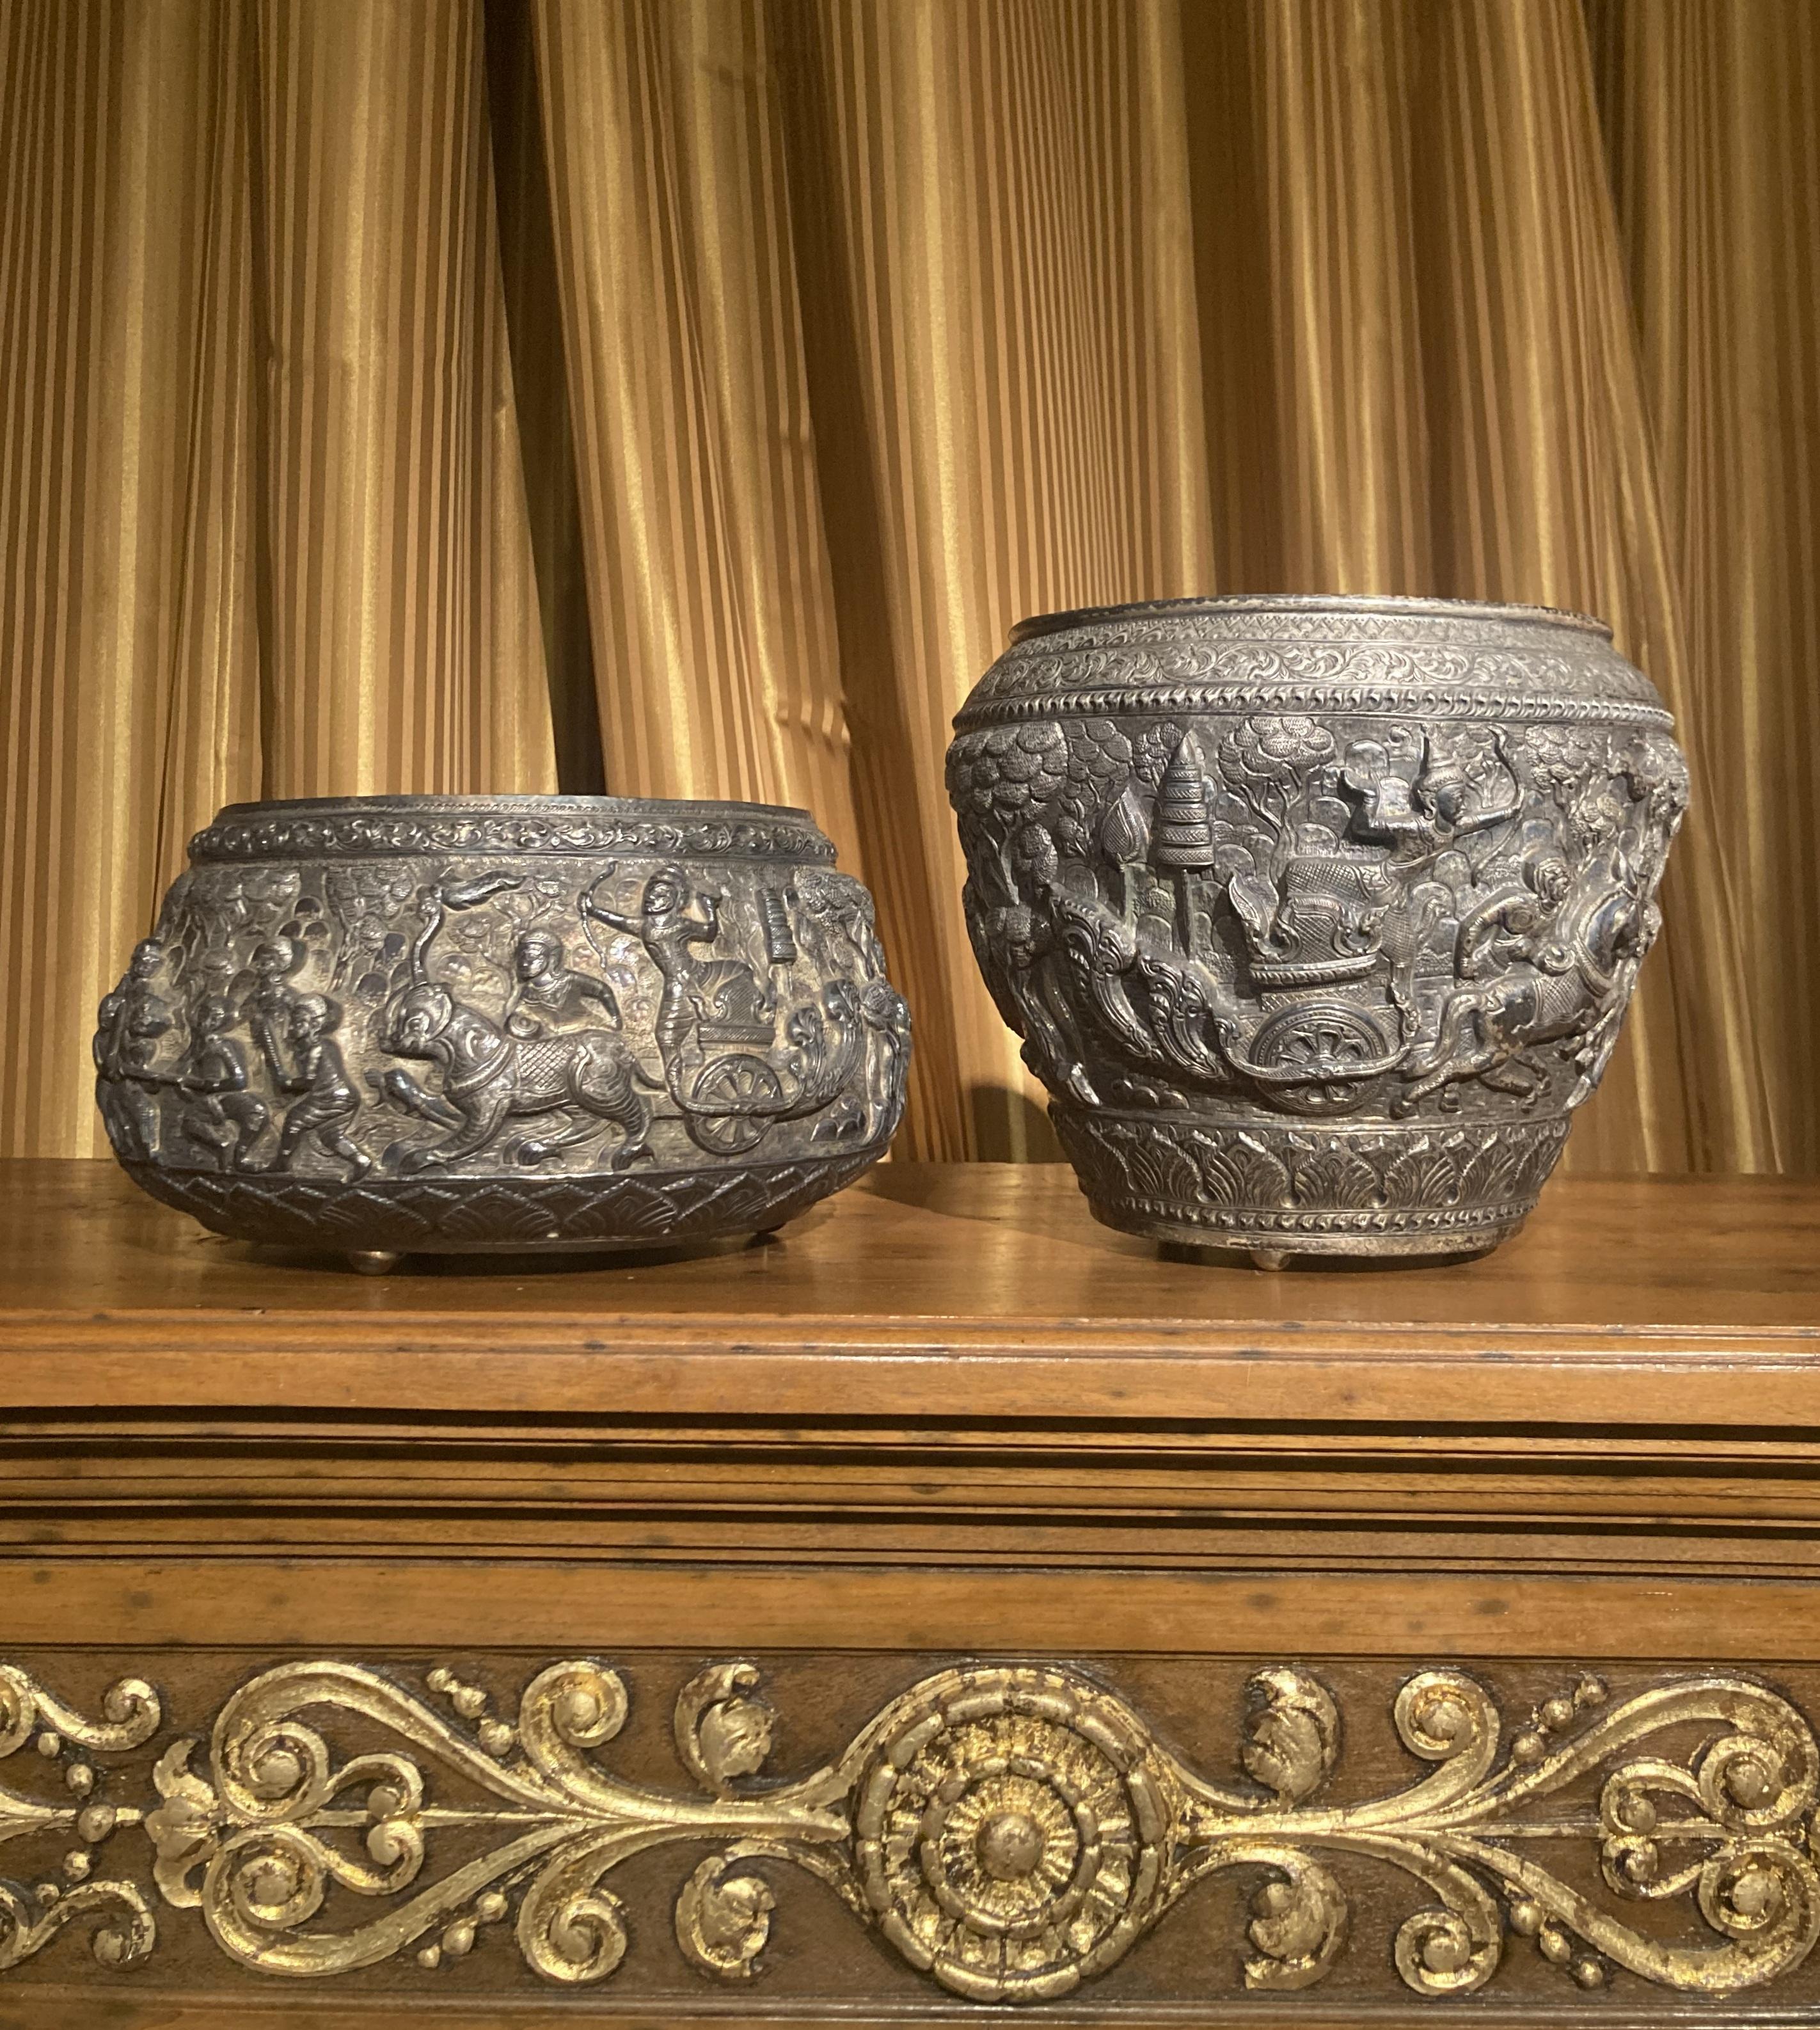 Il s'agit d'une paire sensationnelle de bols Thabeik birmans anciens en argent repoussé du 19e siècle, tous deux richement décorés en ronde-bosse en haut-relief représentant différentes scènes traditionnelles de la mythologie et de l'histoire